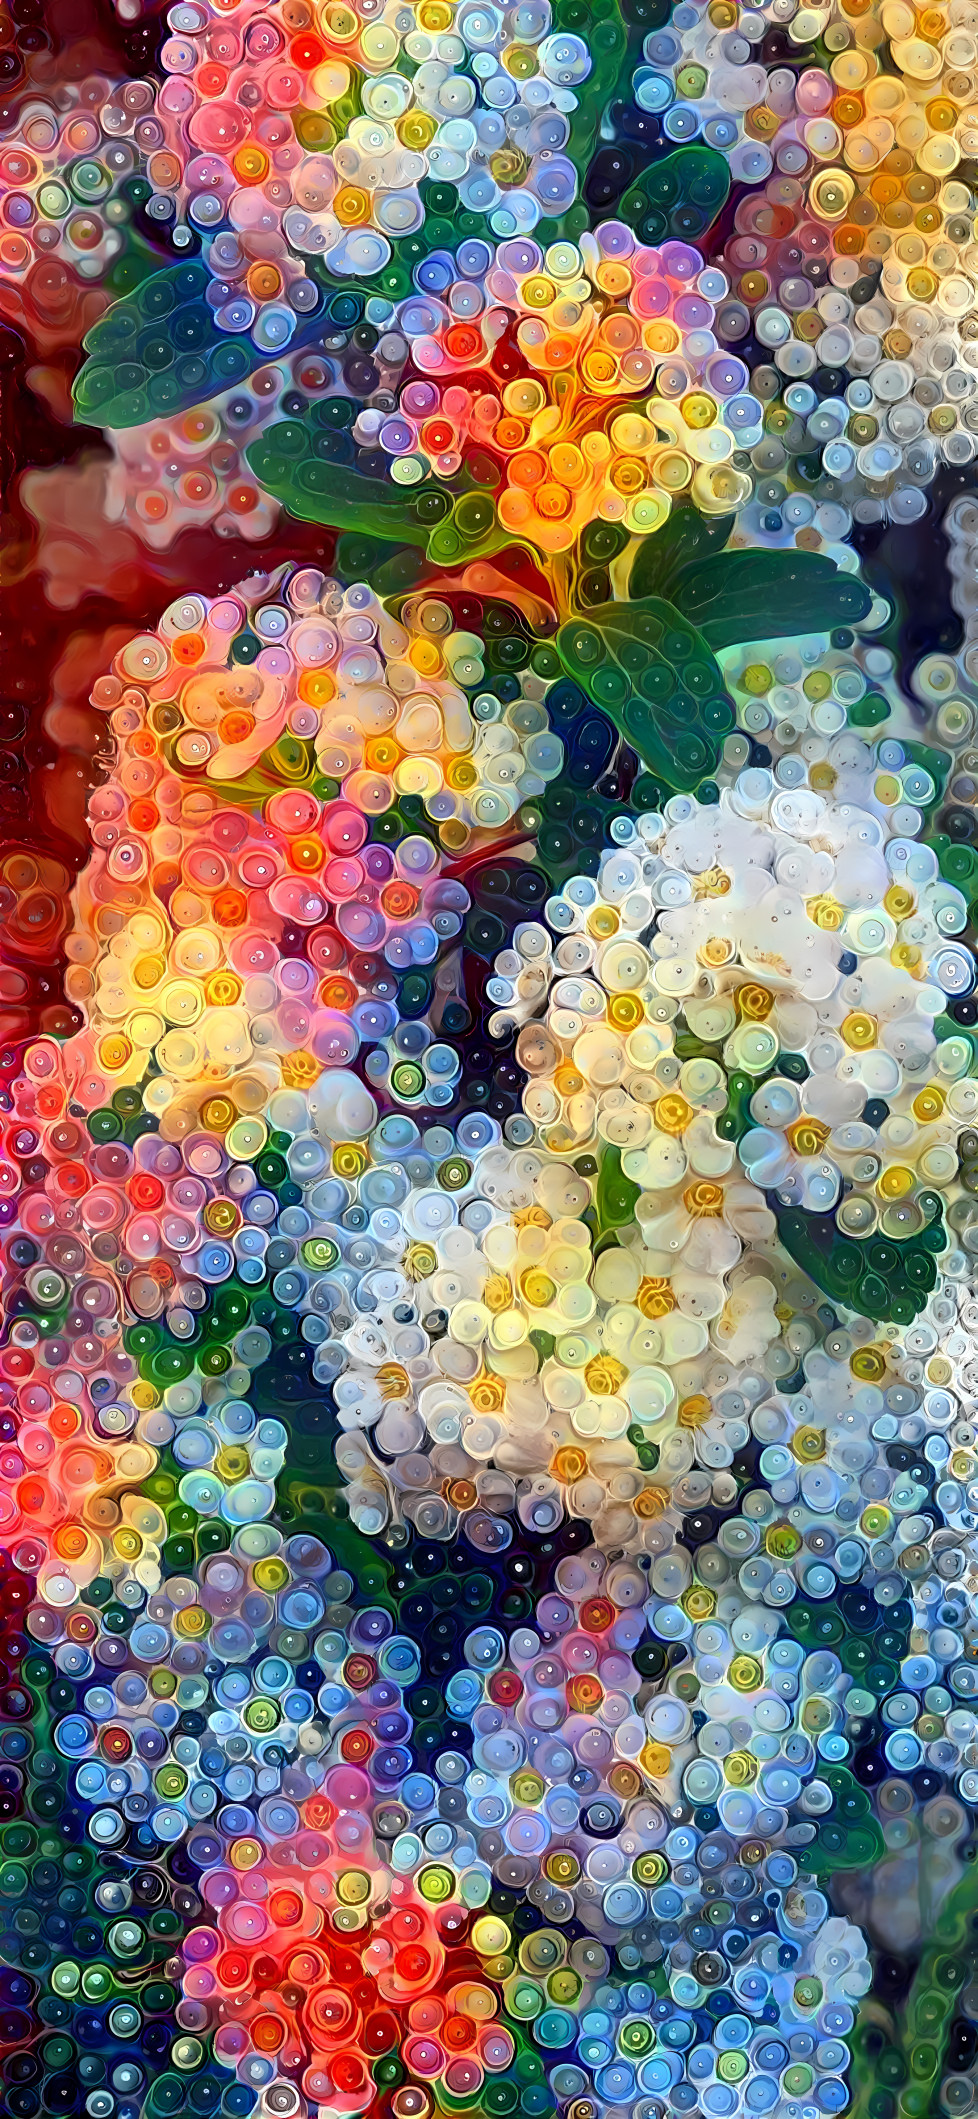 Bubble flowers